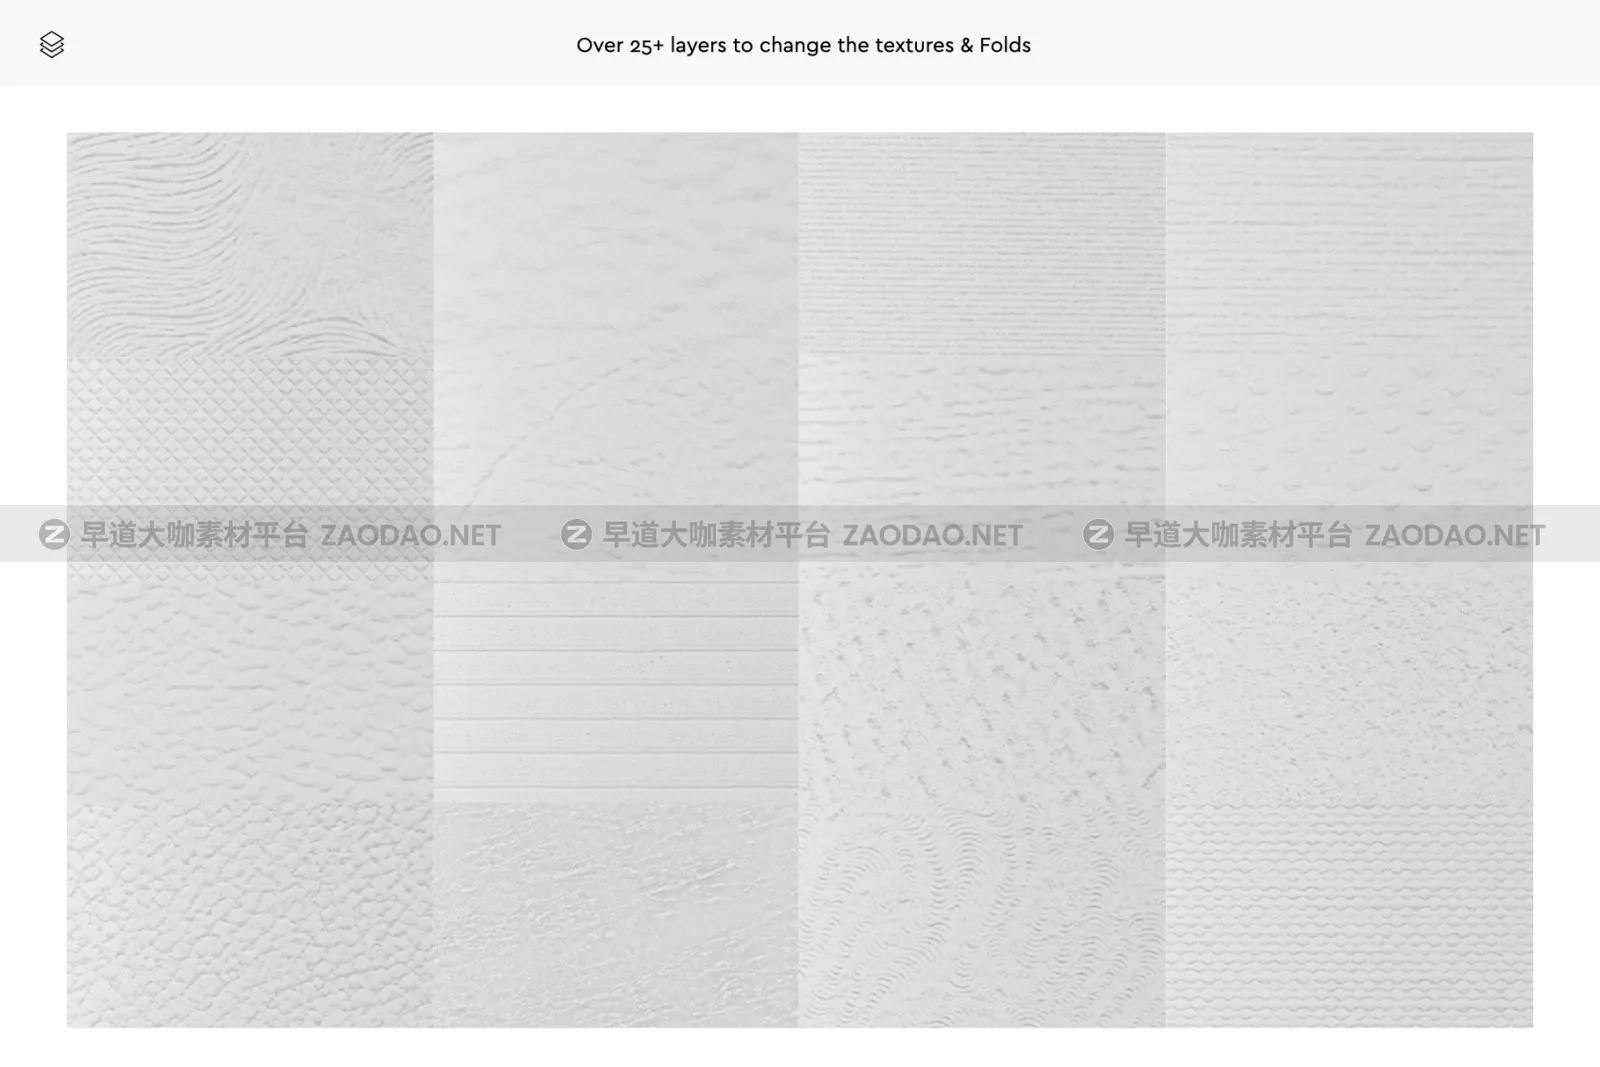 品牌VI设计折痕纹理信纸样机模板 Paper Folds & Textures Branding Mockup插图3